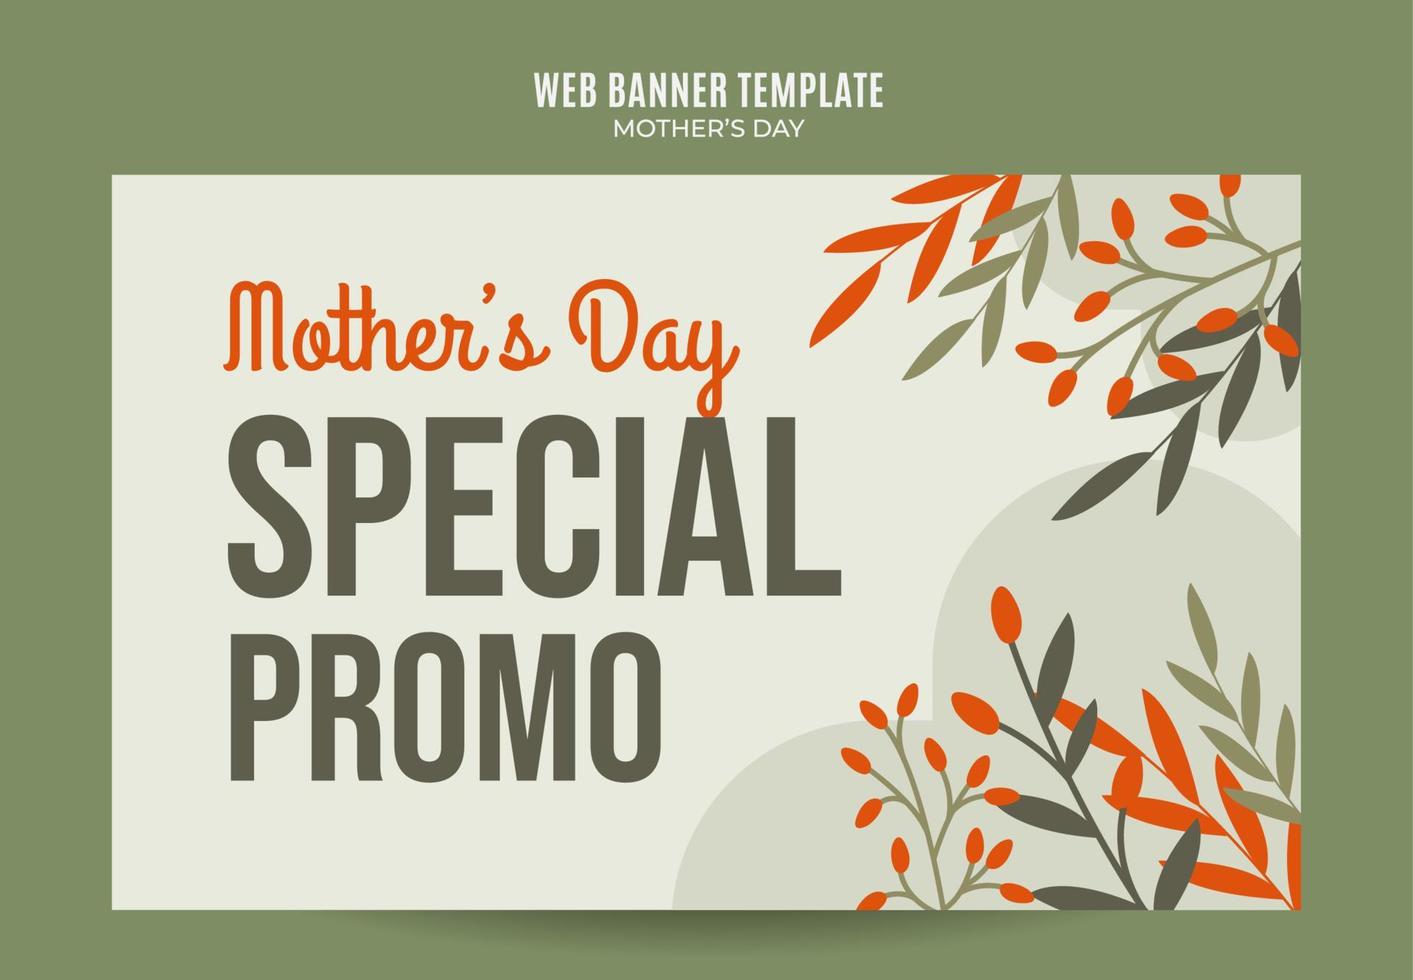 Happy Mother's Day Retro-Web-Banner für Social-Media-Poster, Banner, Weltraumbereich und Hintergrund vektor